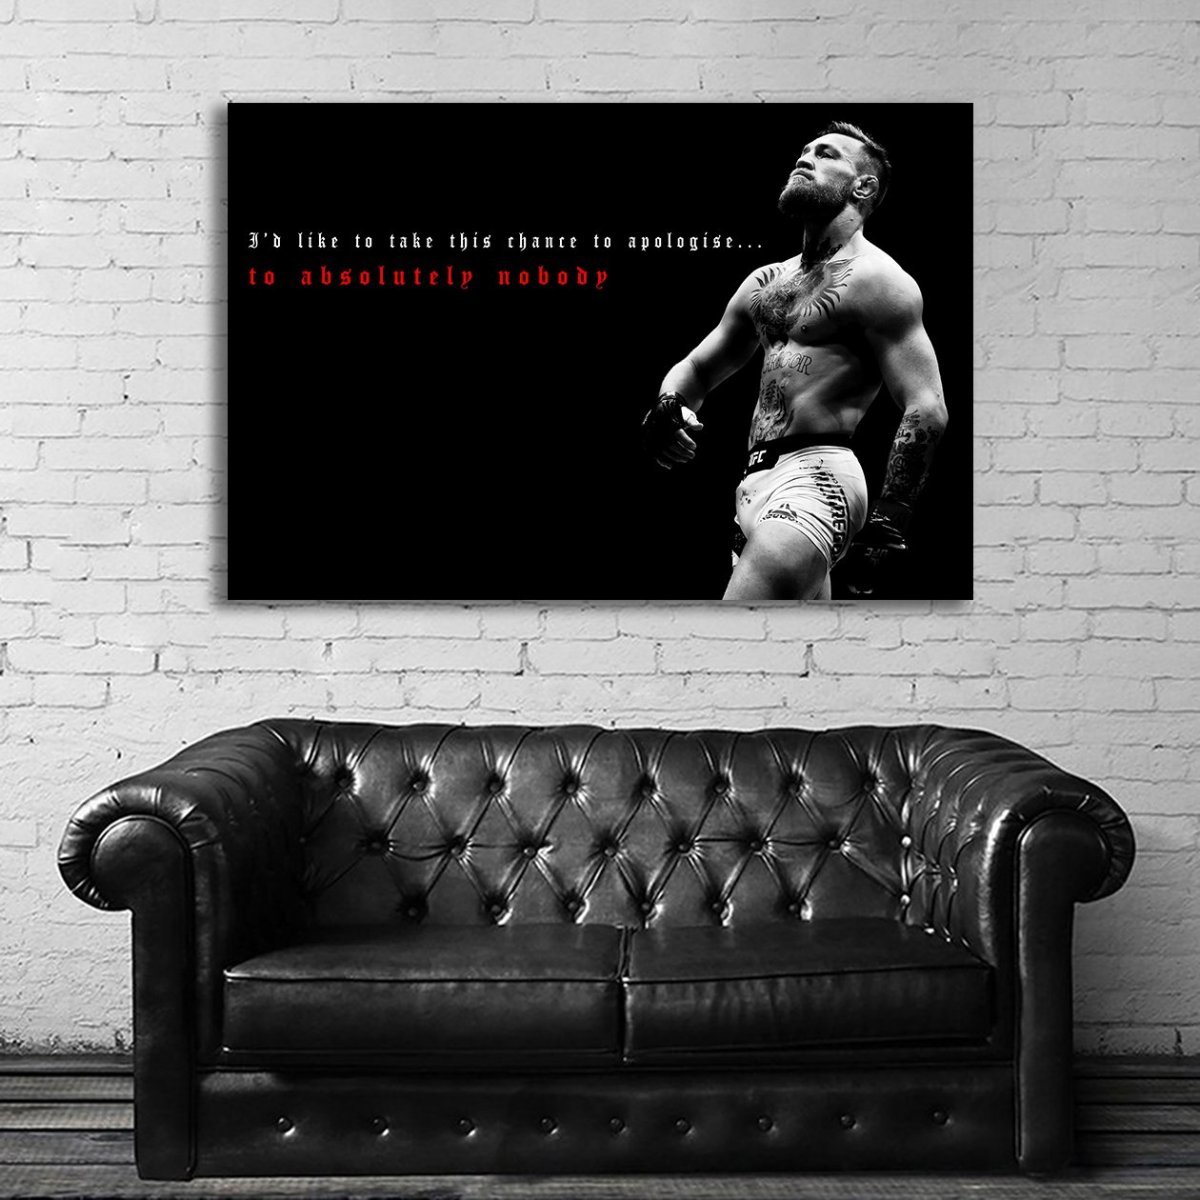 コナー・マクレガー Conor McGregor 特大 ポスター 150x100cm 海外 UFC 総合 格闘家 ボクシング インテリア グッズ 雑貨 絵 写真 大 7_画像1